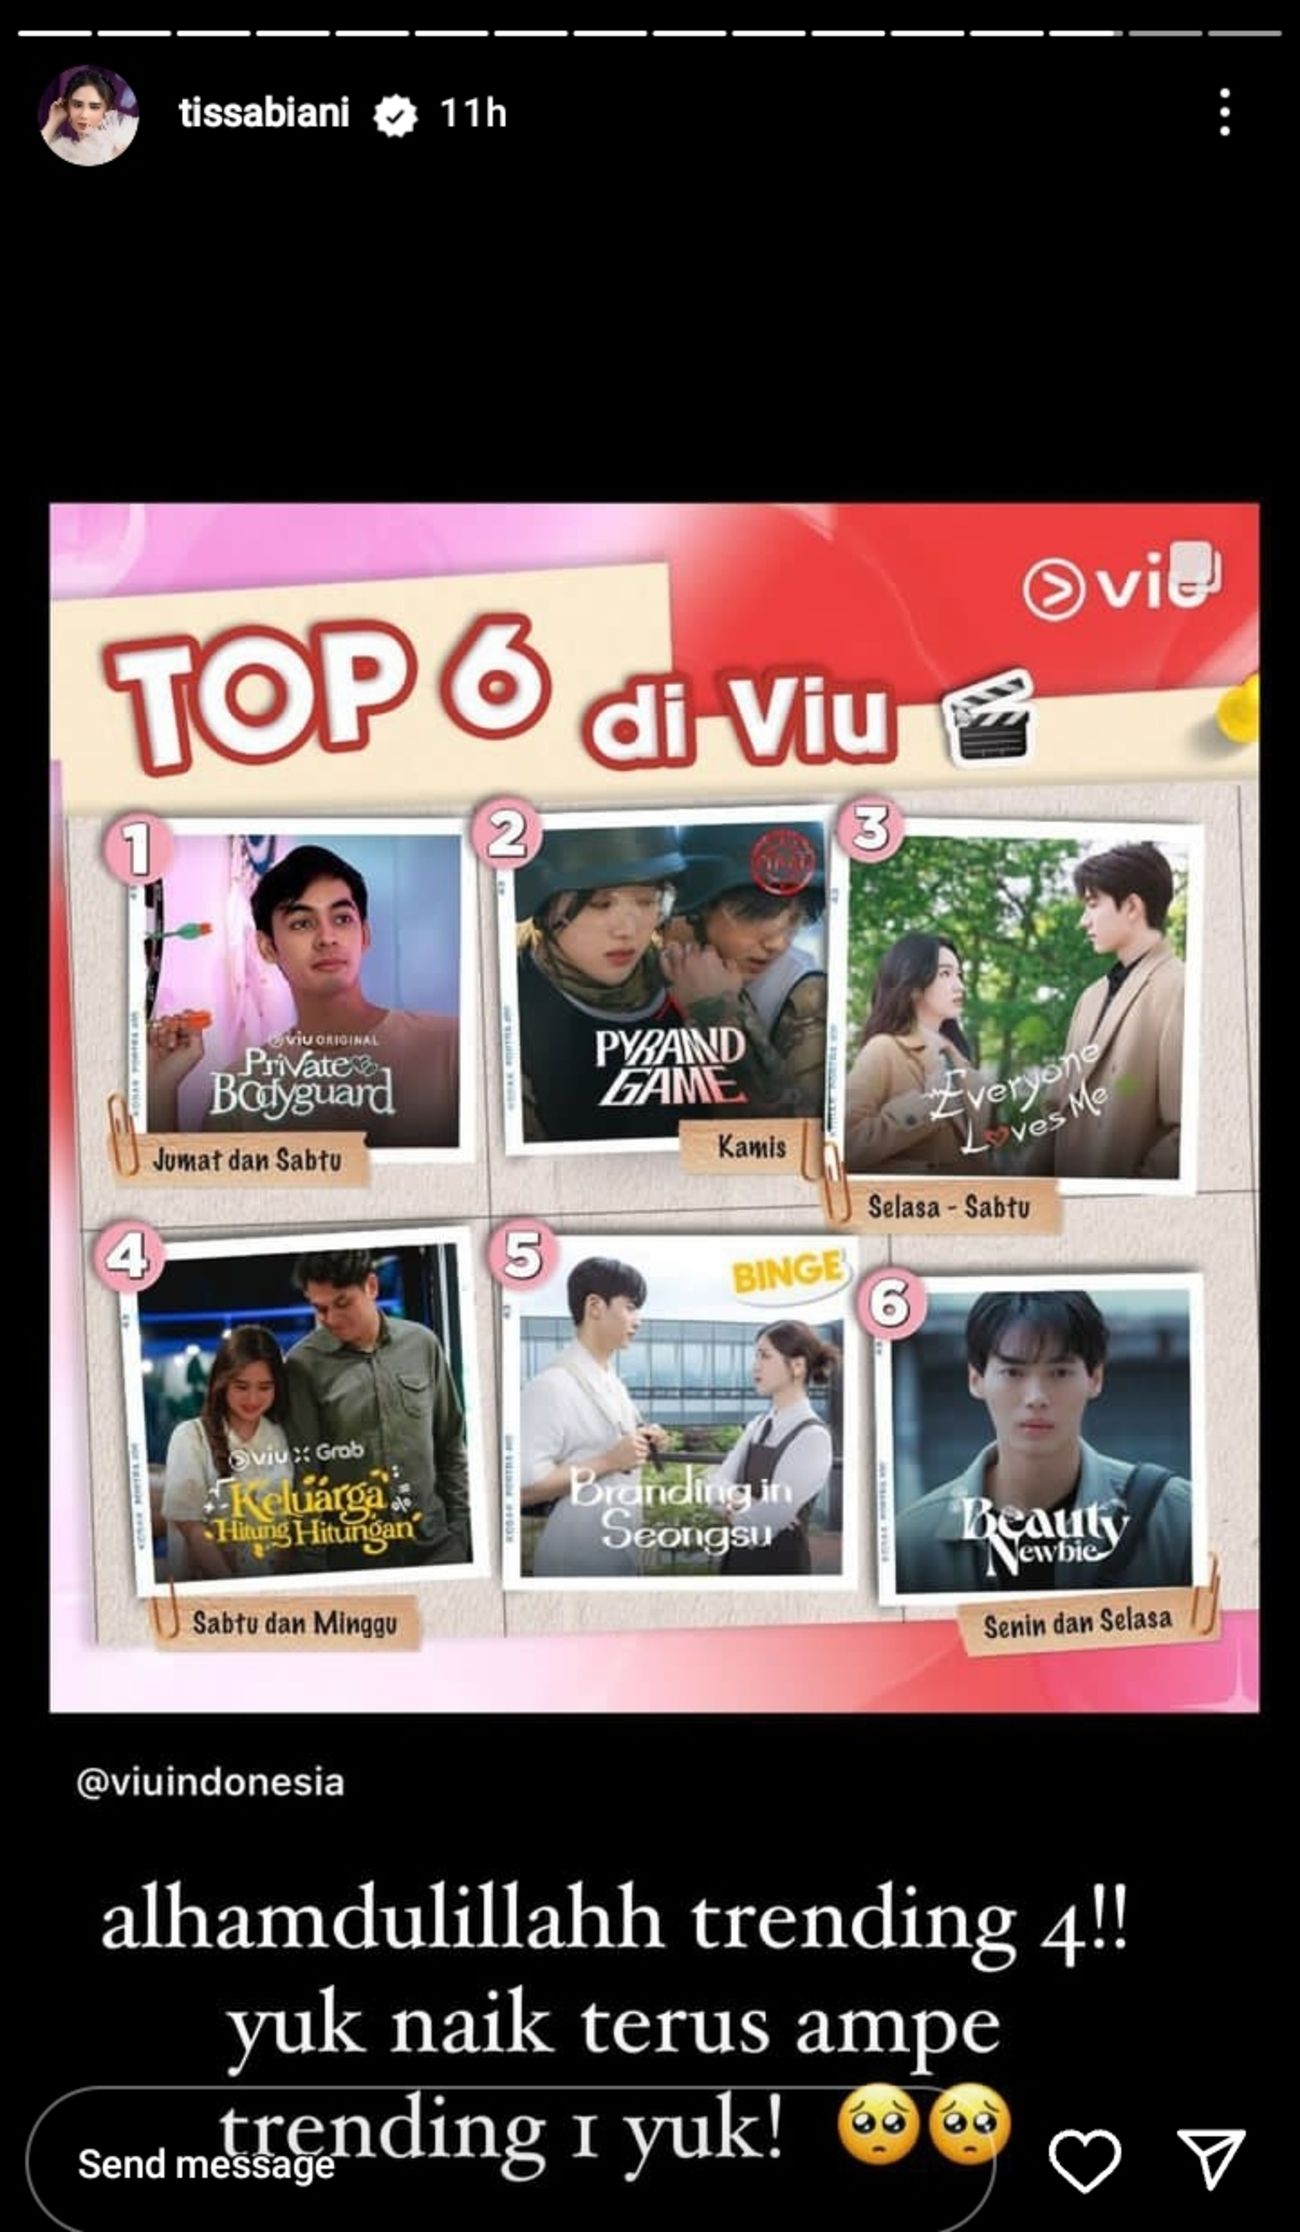 Series Keluarga Hitung-Hitungan Trending 4 di VIU Indonesia, Dibintangi Tissa Biani dan Kevin Julio